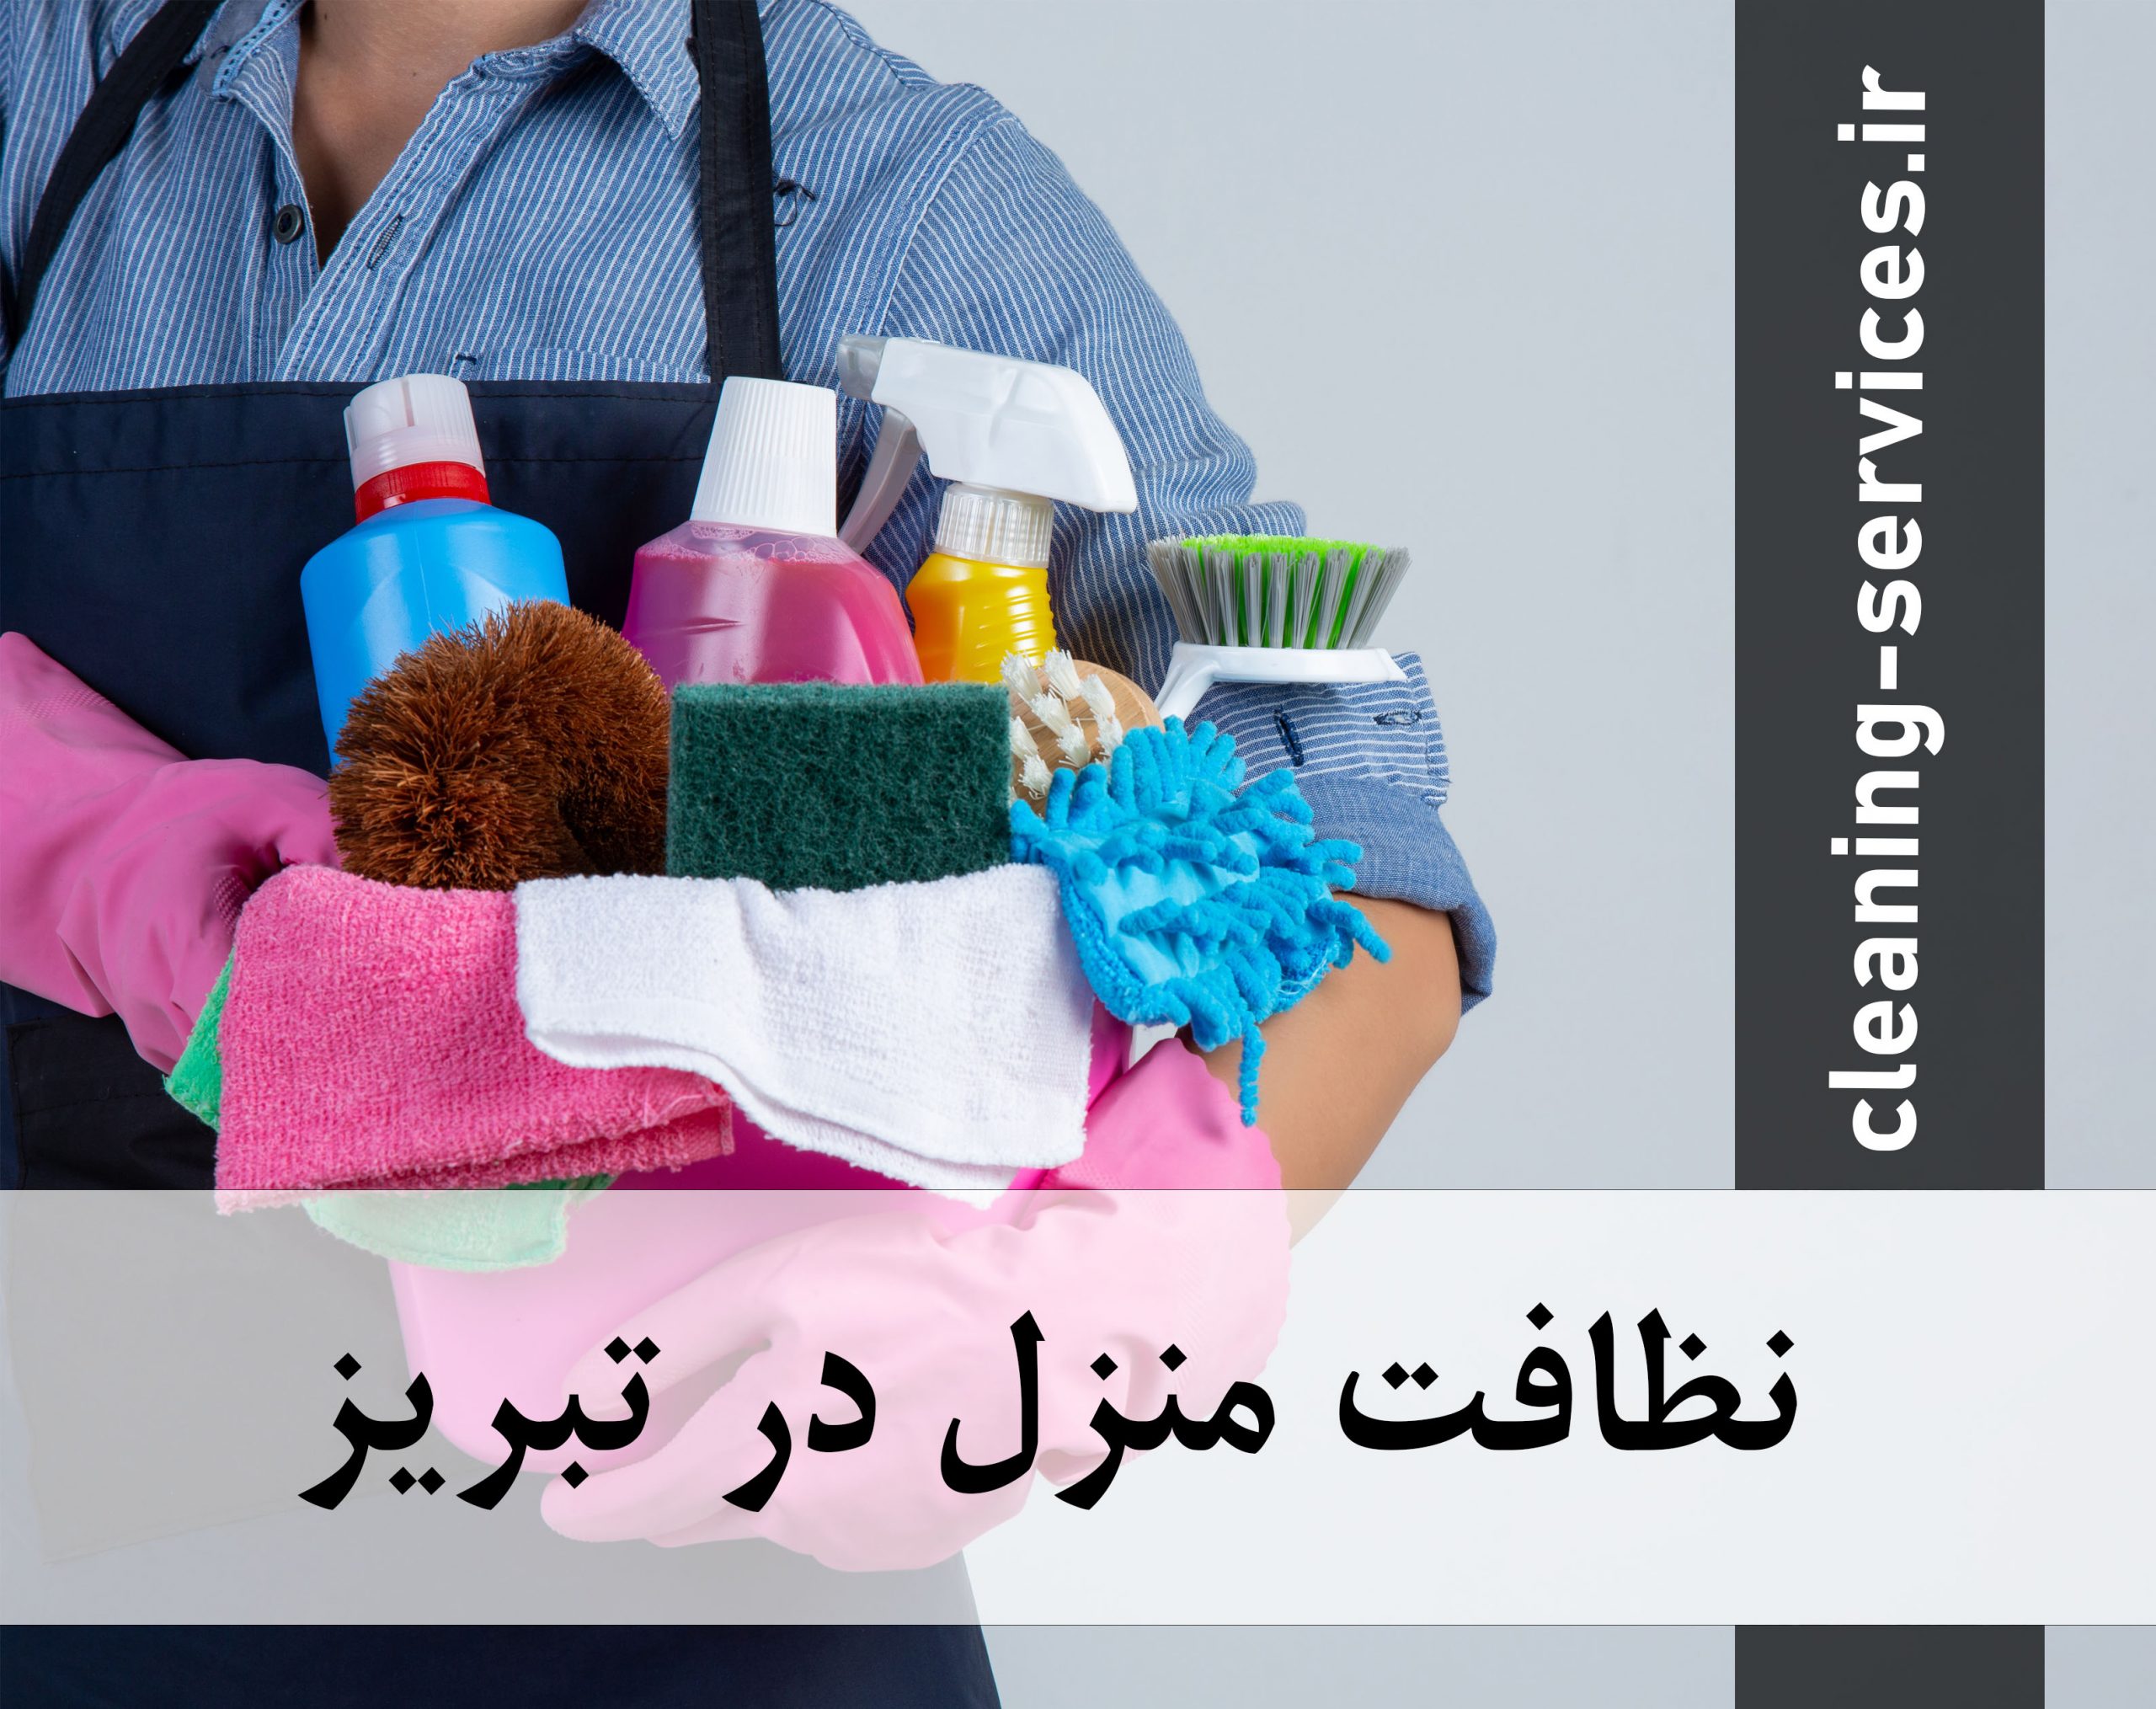 نظافت منزل در تبریز